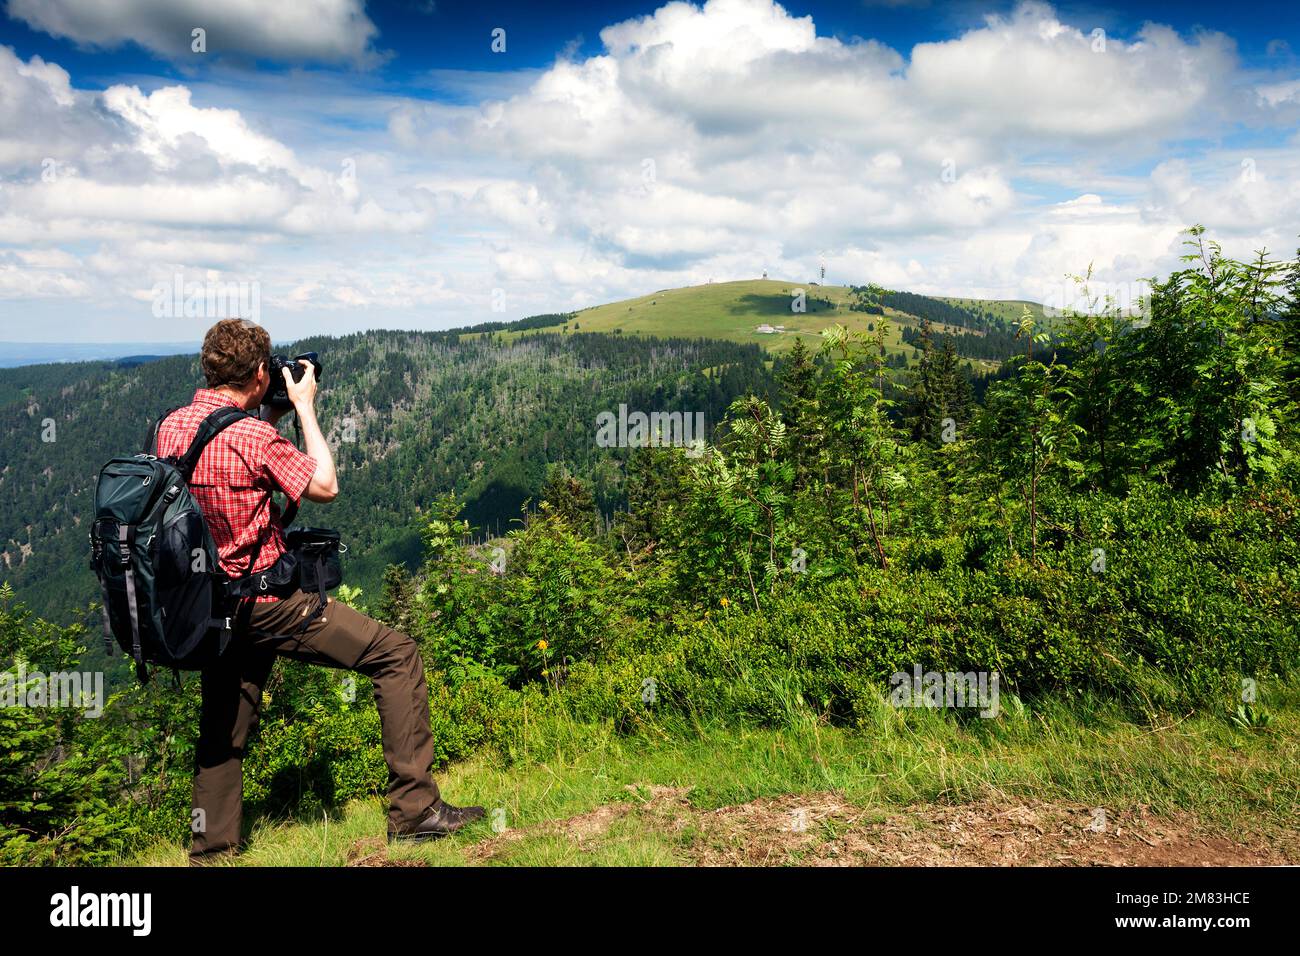 Wanderer fotografiert in die Landschaft, Feldberg, Schwarzwald, Baden-Württemberg, Deutschland Stock Photo